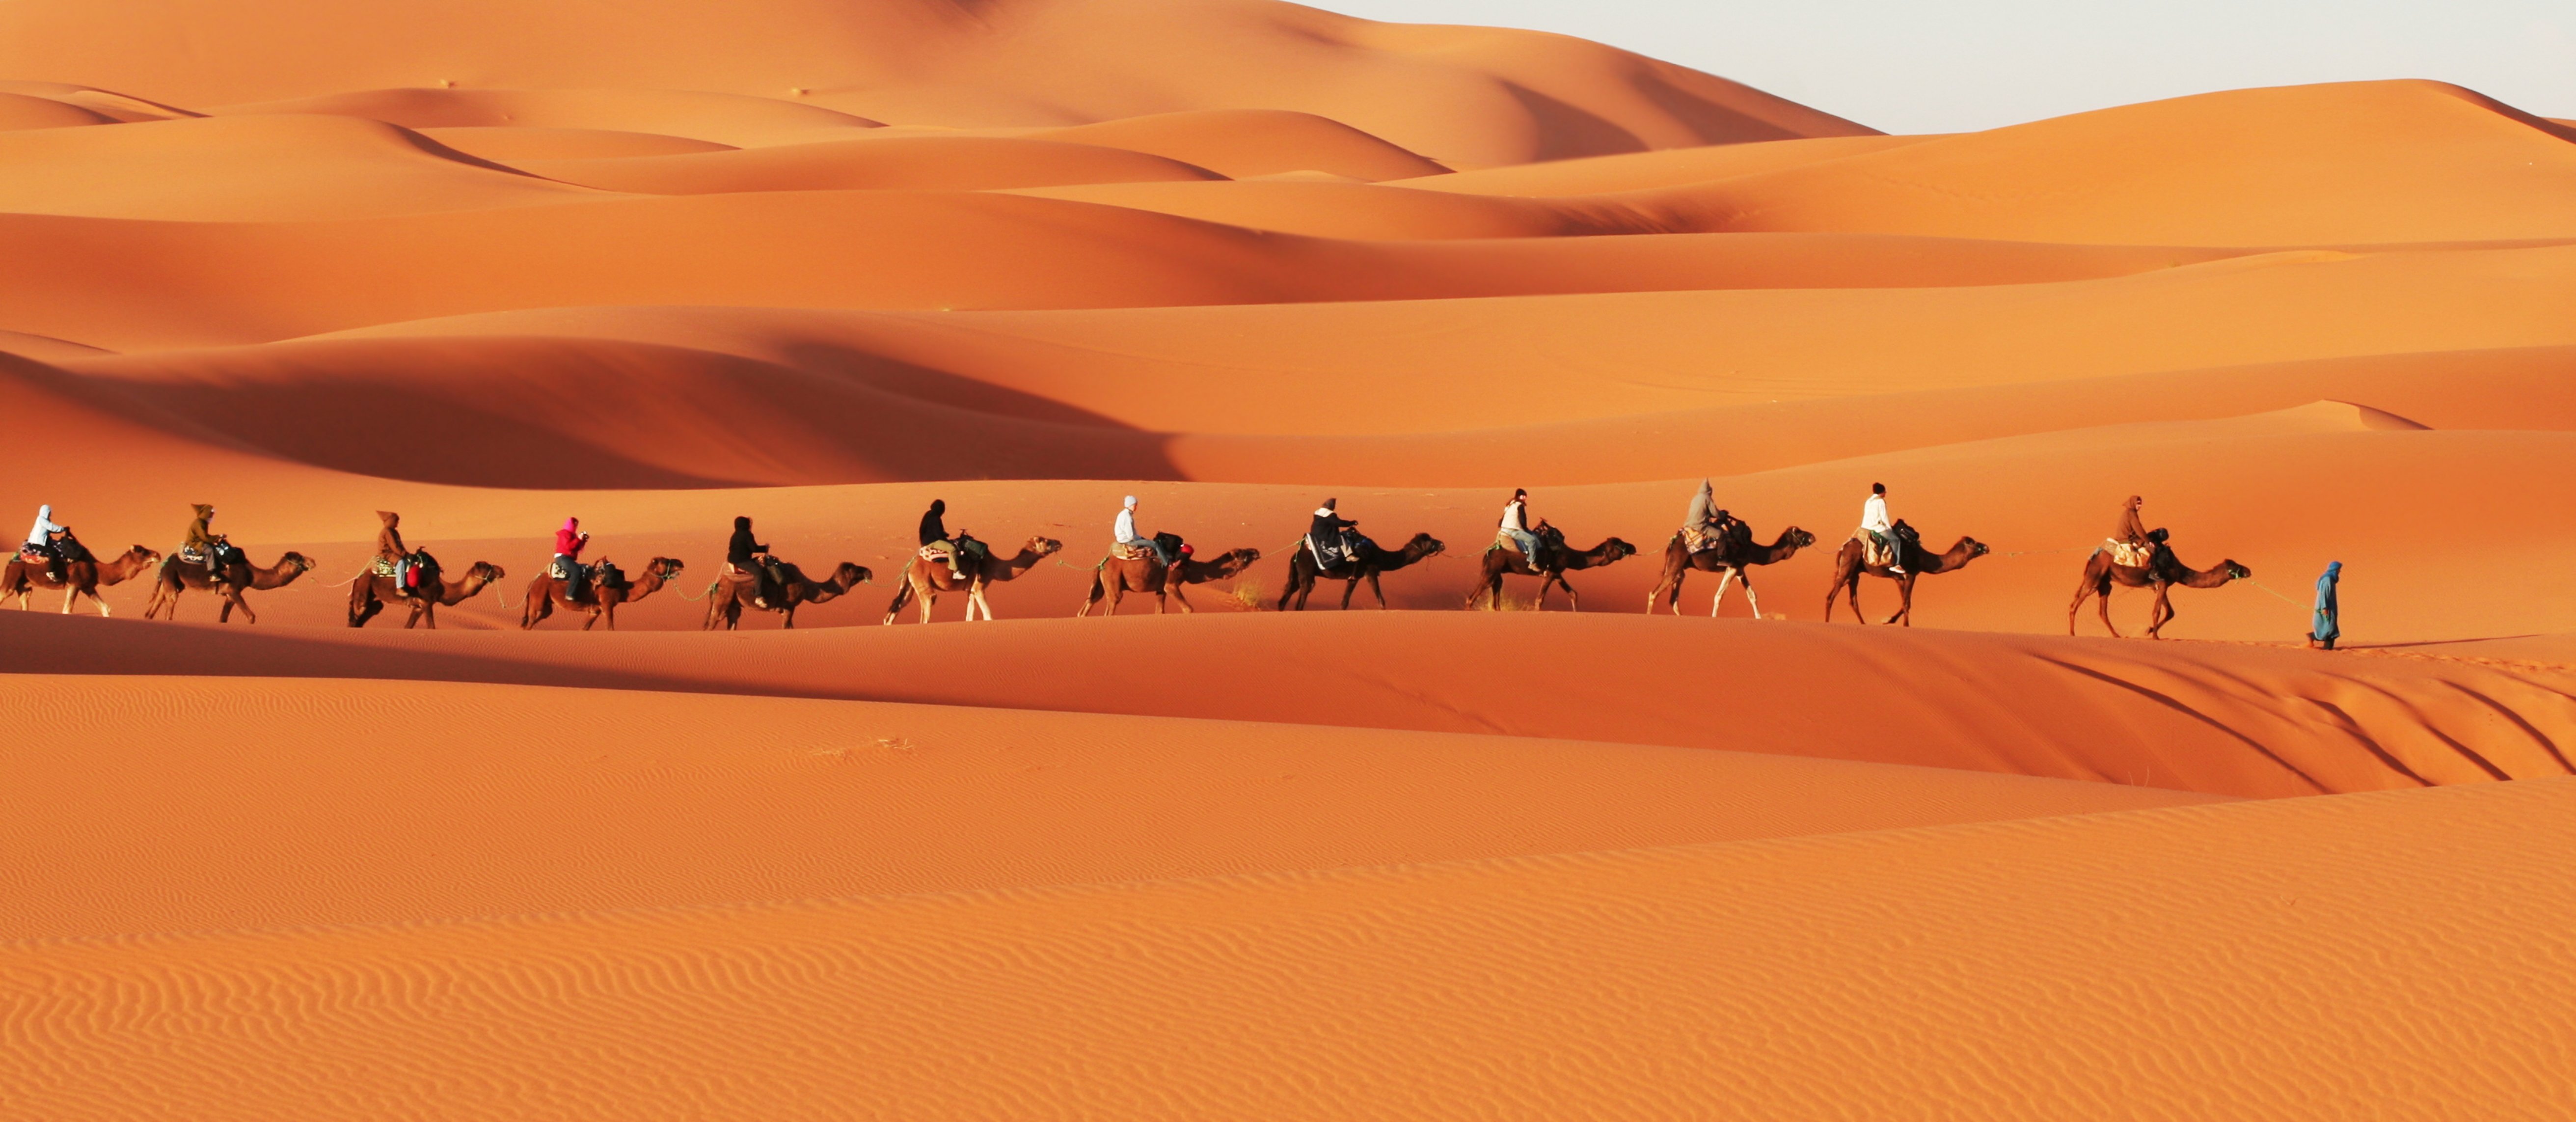 Karavan në shkretëtirën e Saharasë